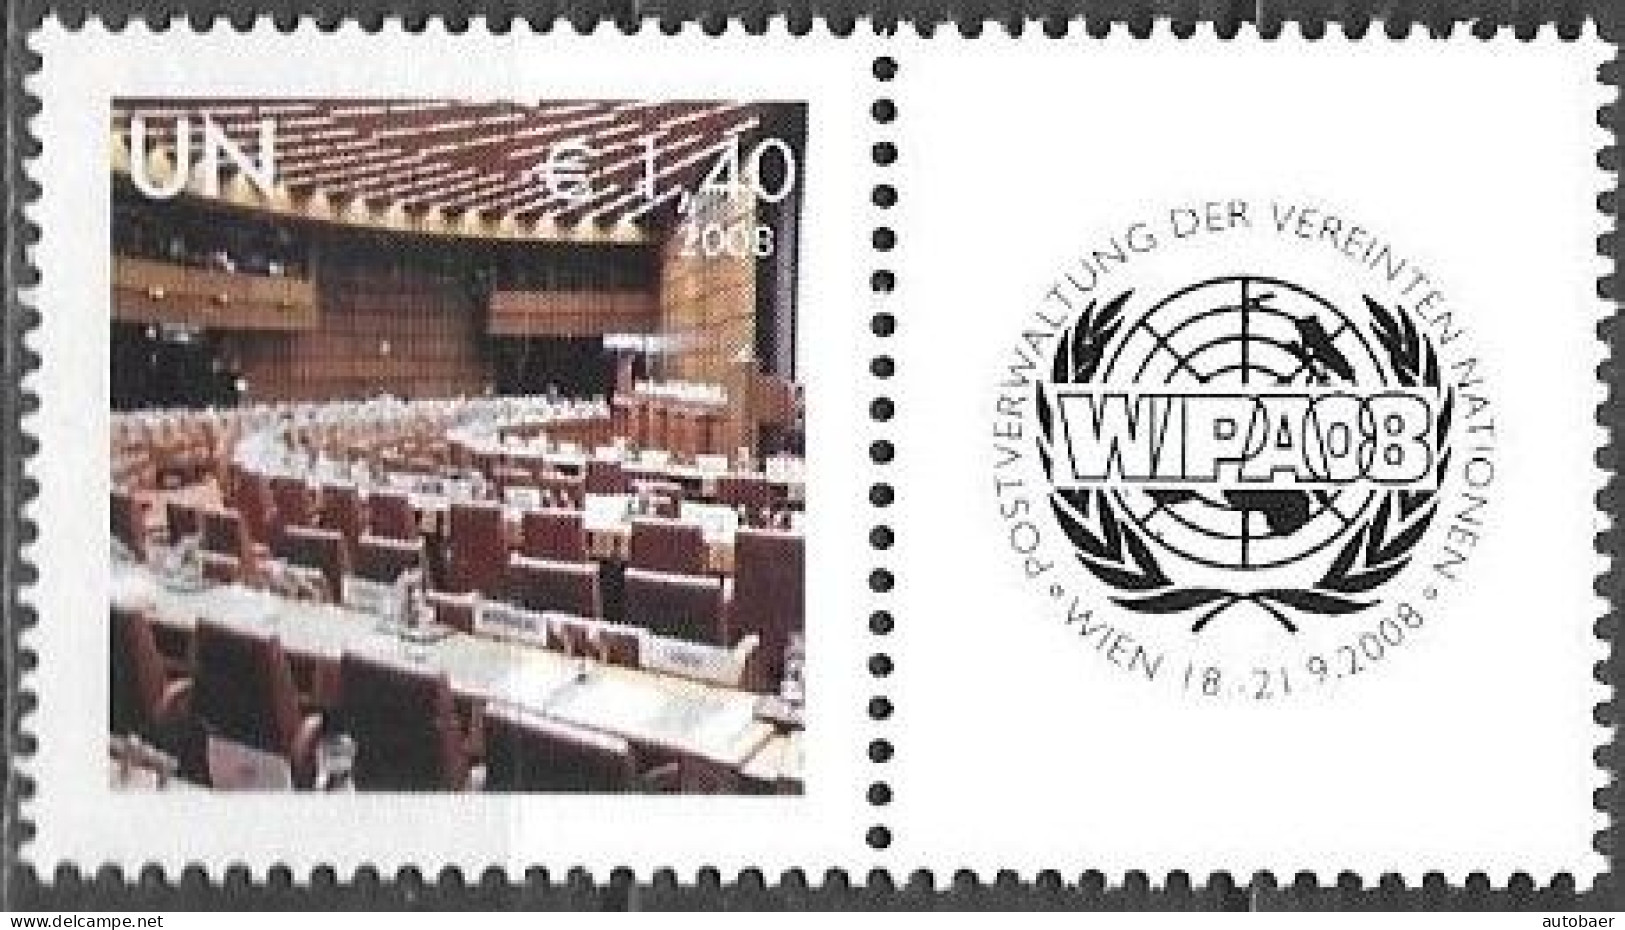 United Nations UNO UN Vereinte Nationen Vienna Wien 2008 Stamp Exhibition WIPA Briefmarken Ausstellung Mi. 554 MNH ** - Unused Stamps